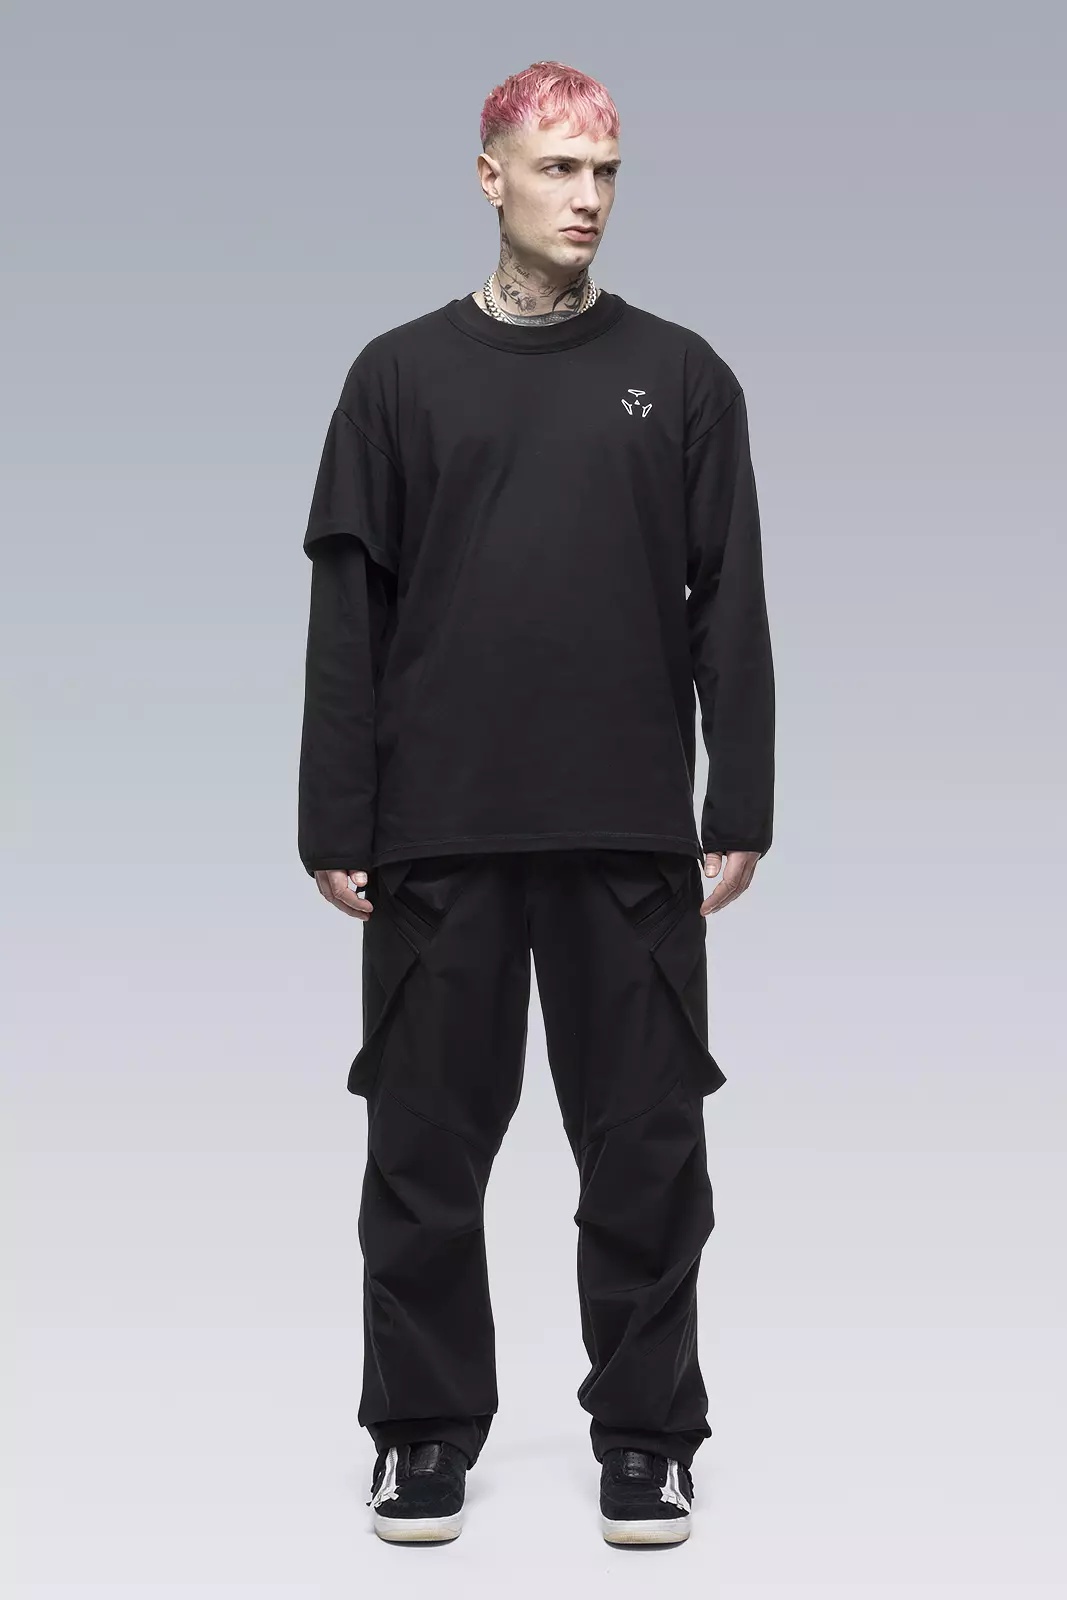 S29-PR-A 100% Organic Cotton Long Sleeve T-shirt Black - 1